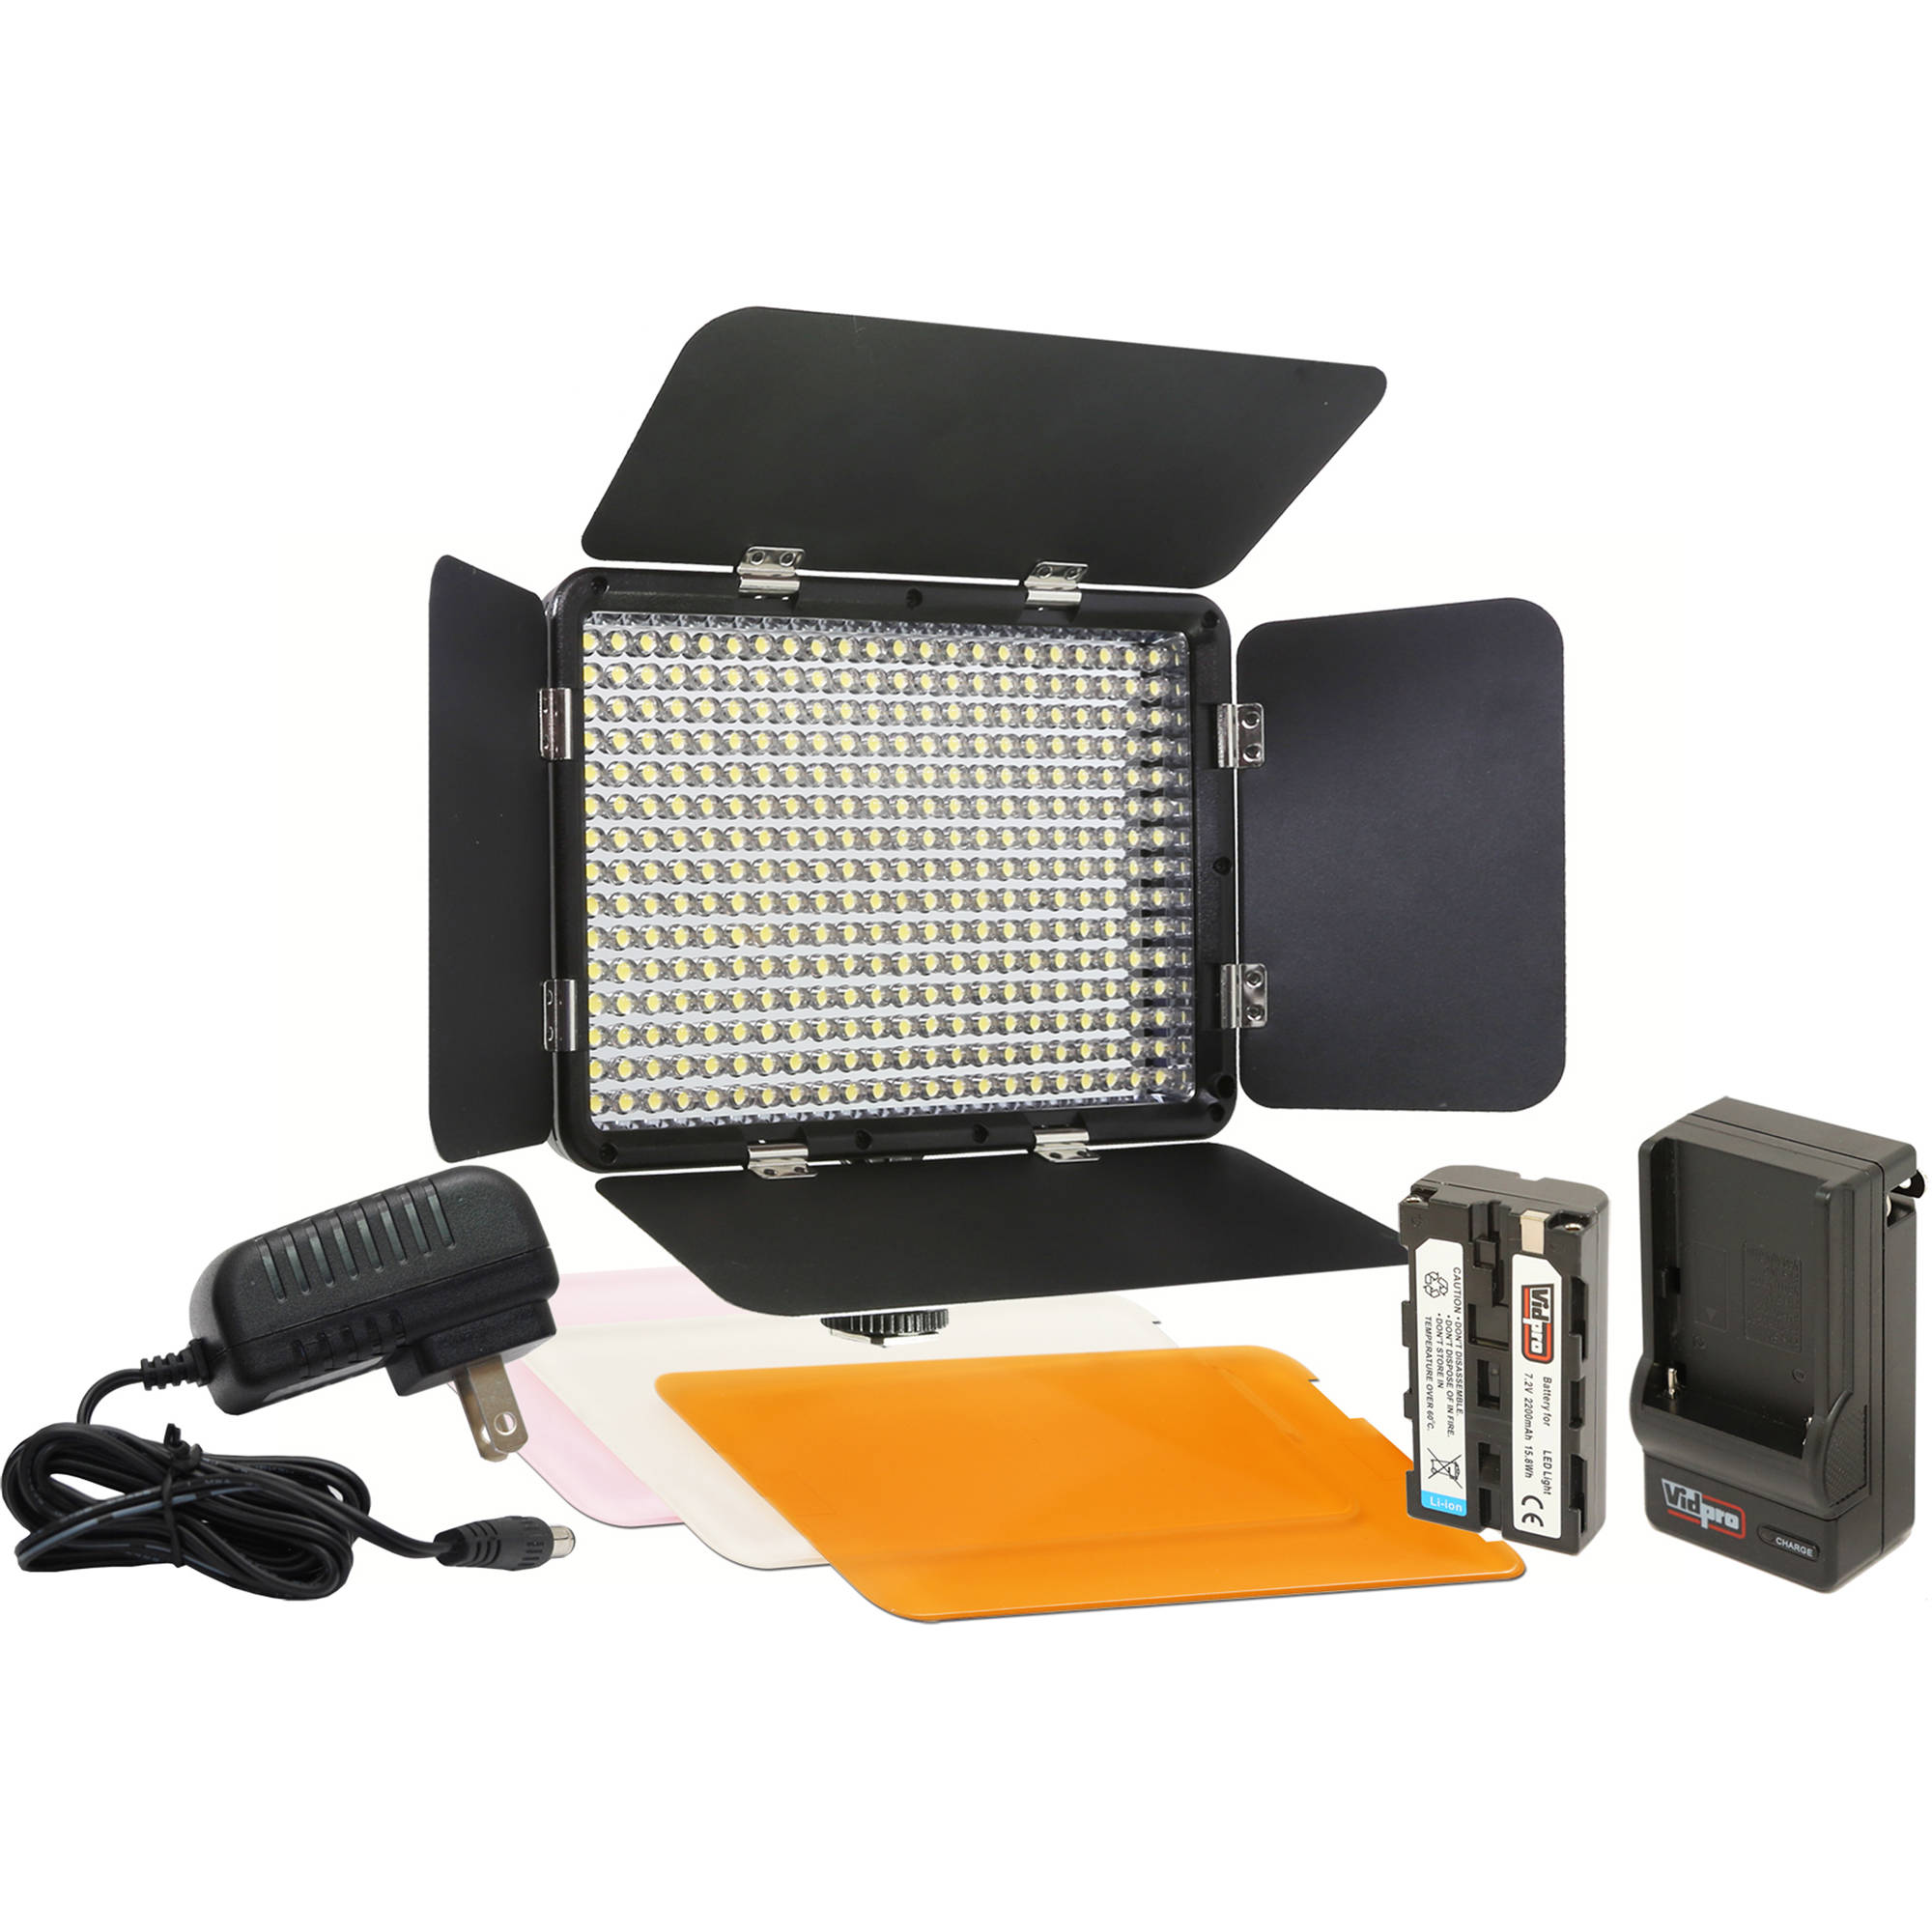 Portable lighting kits - guide to lighting options